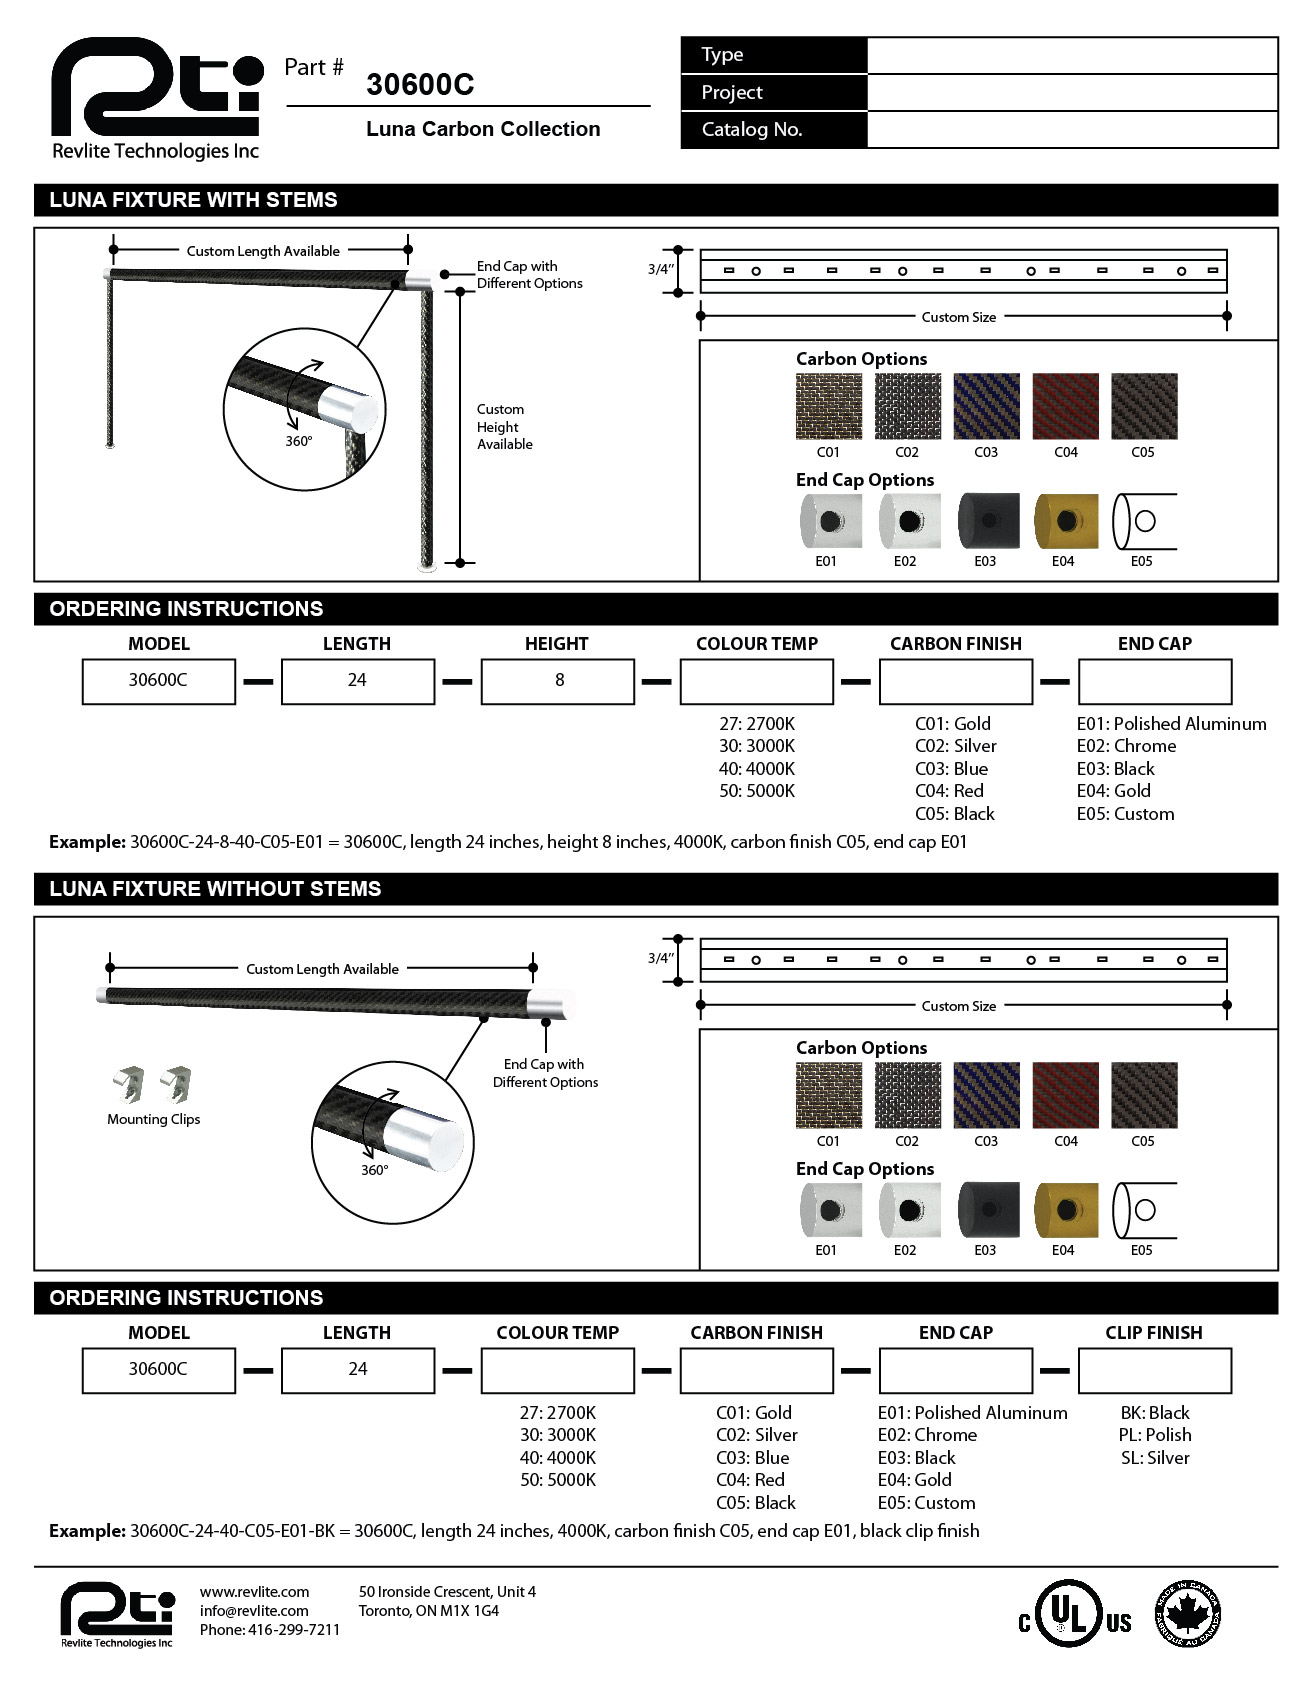 Cut Sheet Design For Revlite Technologies Inspiring Design